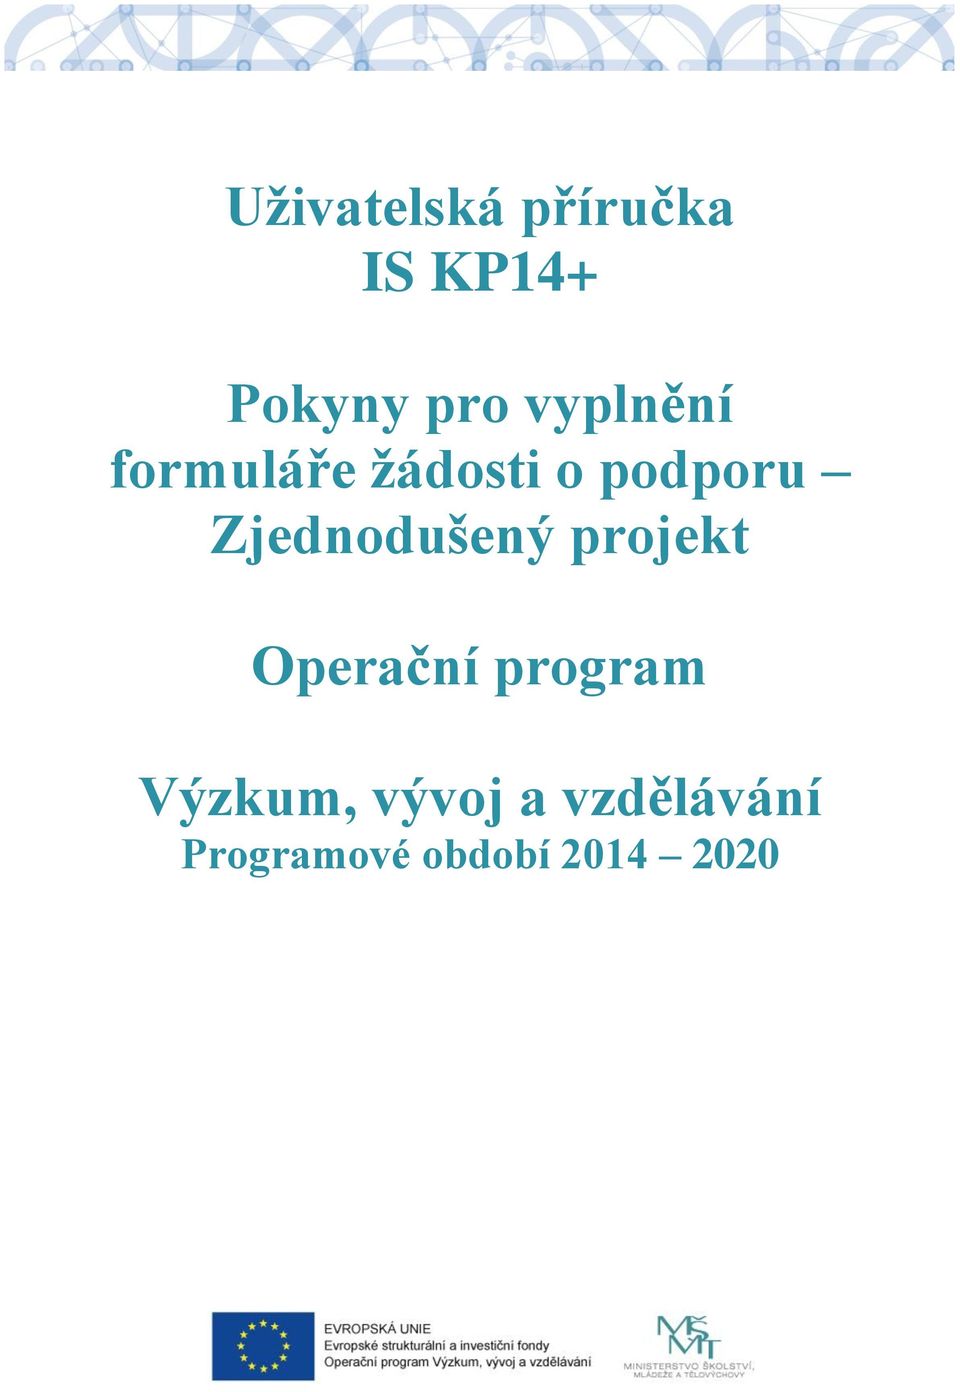 Zjednodušený projekt Operační program